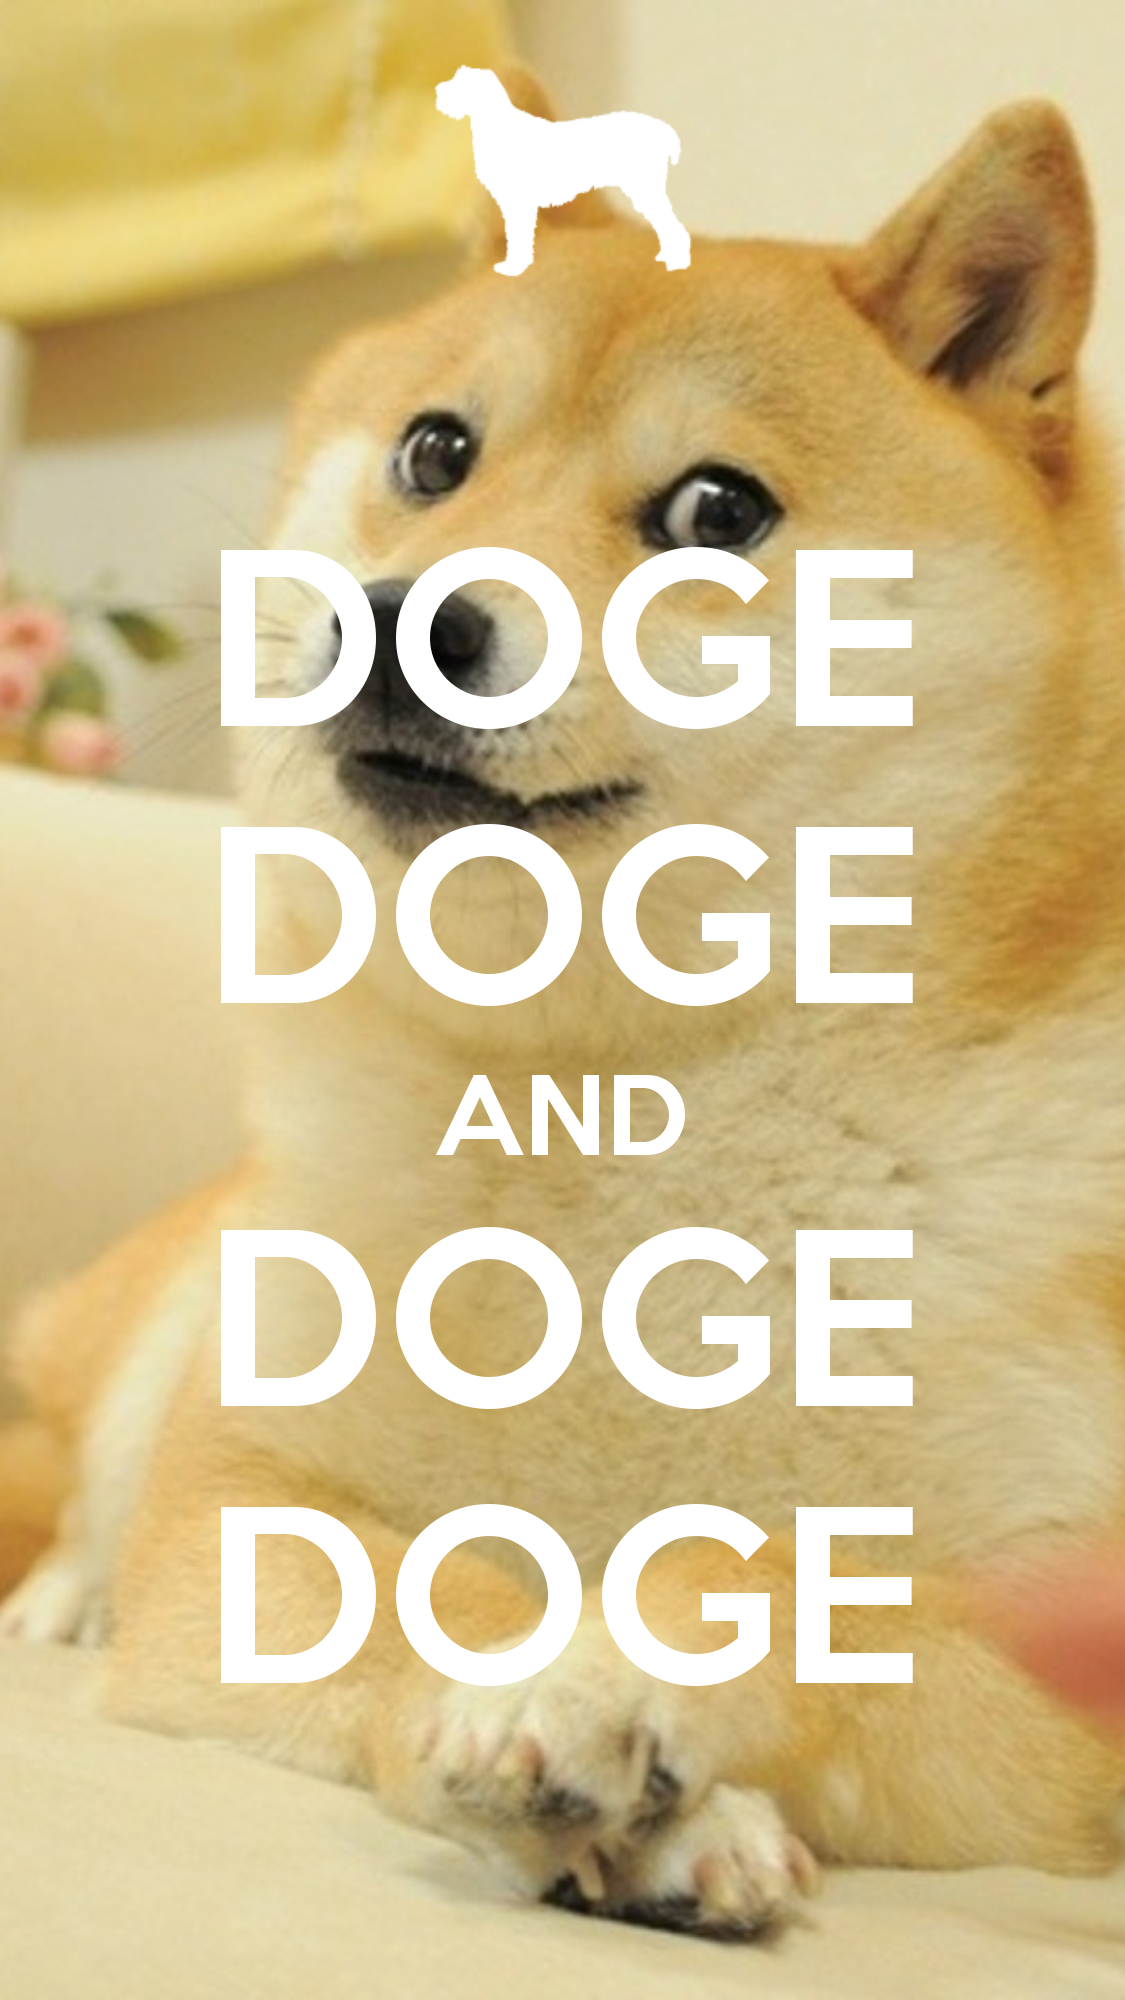 Doge Wallpaper iPhone. Doge meme, Doge, Doge dog